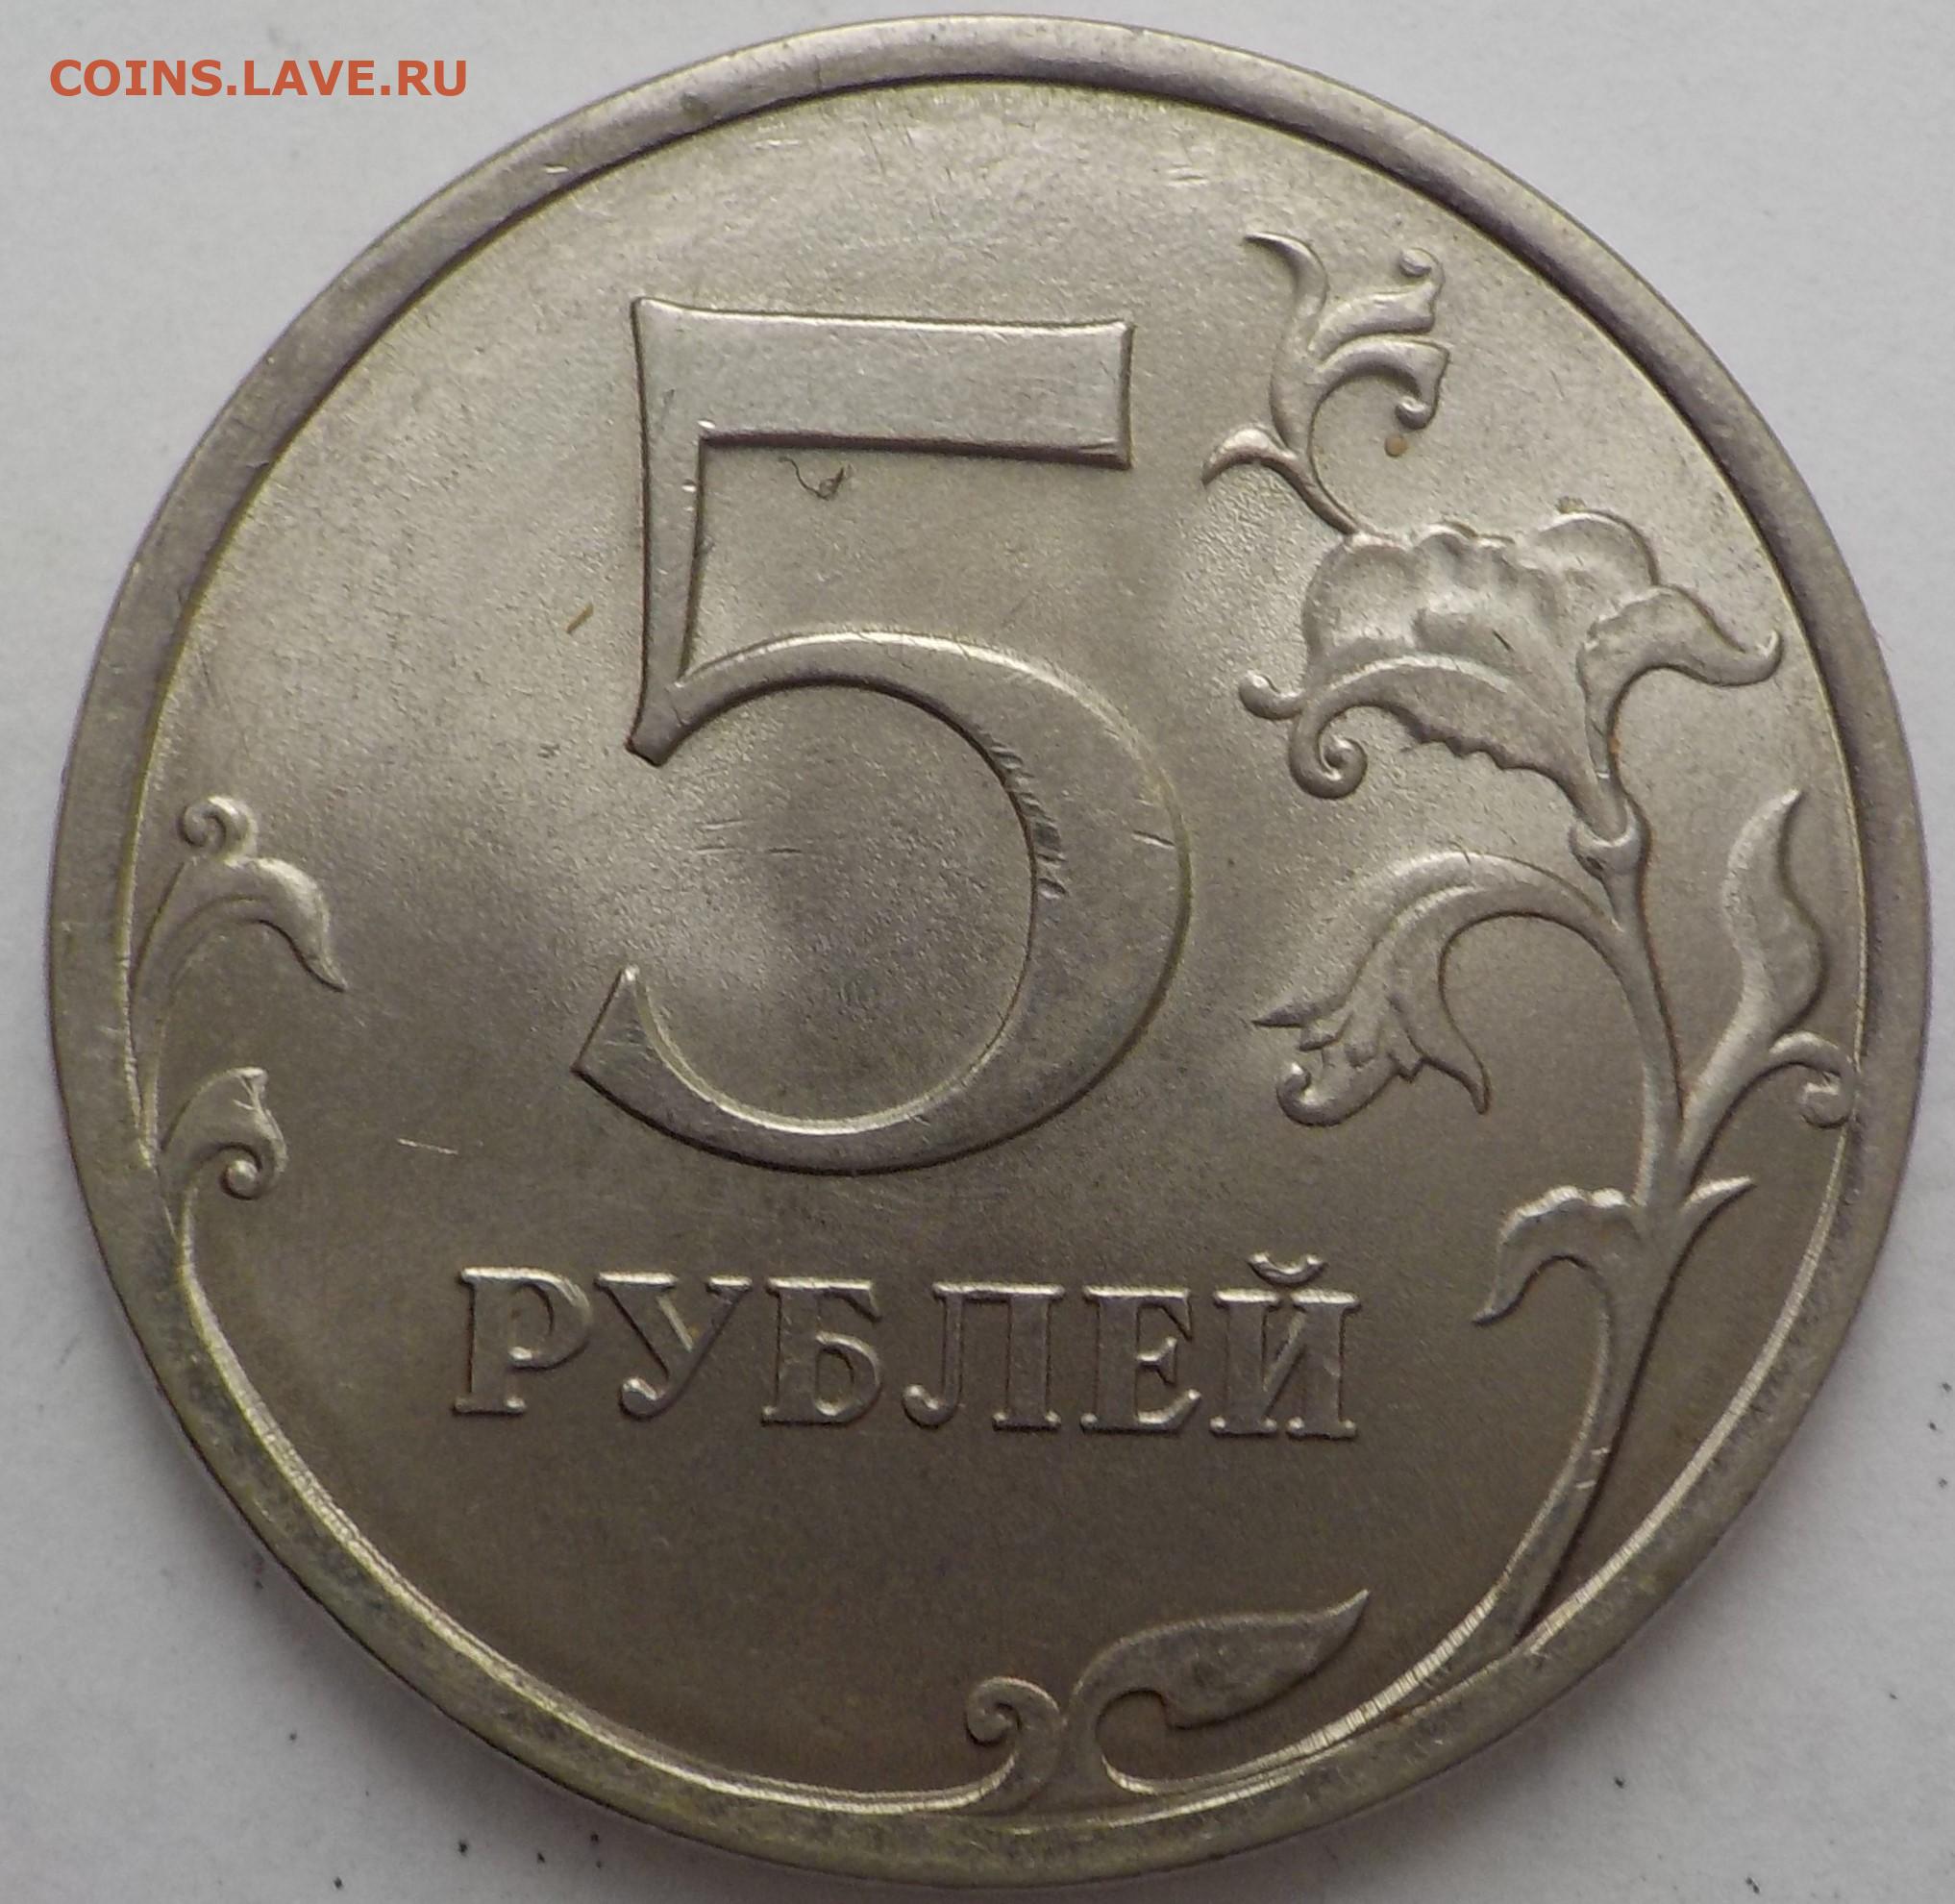 Даш 5 рублей. Пять рублей. Размер 5 рублевой монеты. Размер 5 рублей. 5 Рублей картинка.